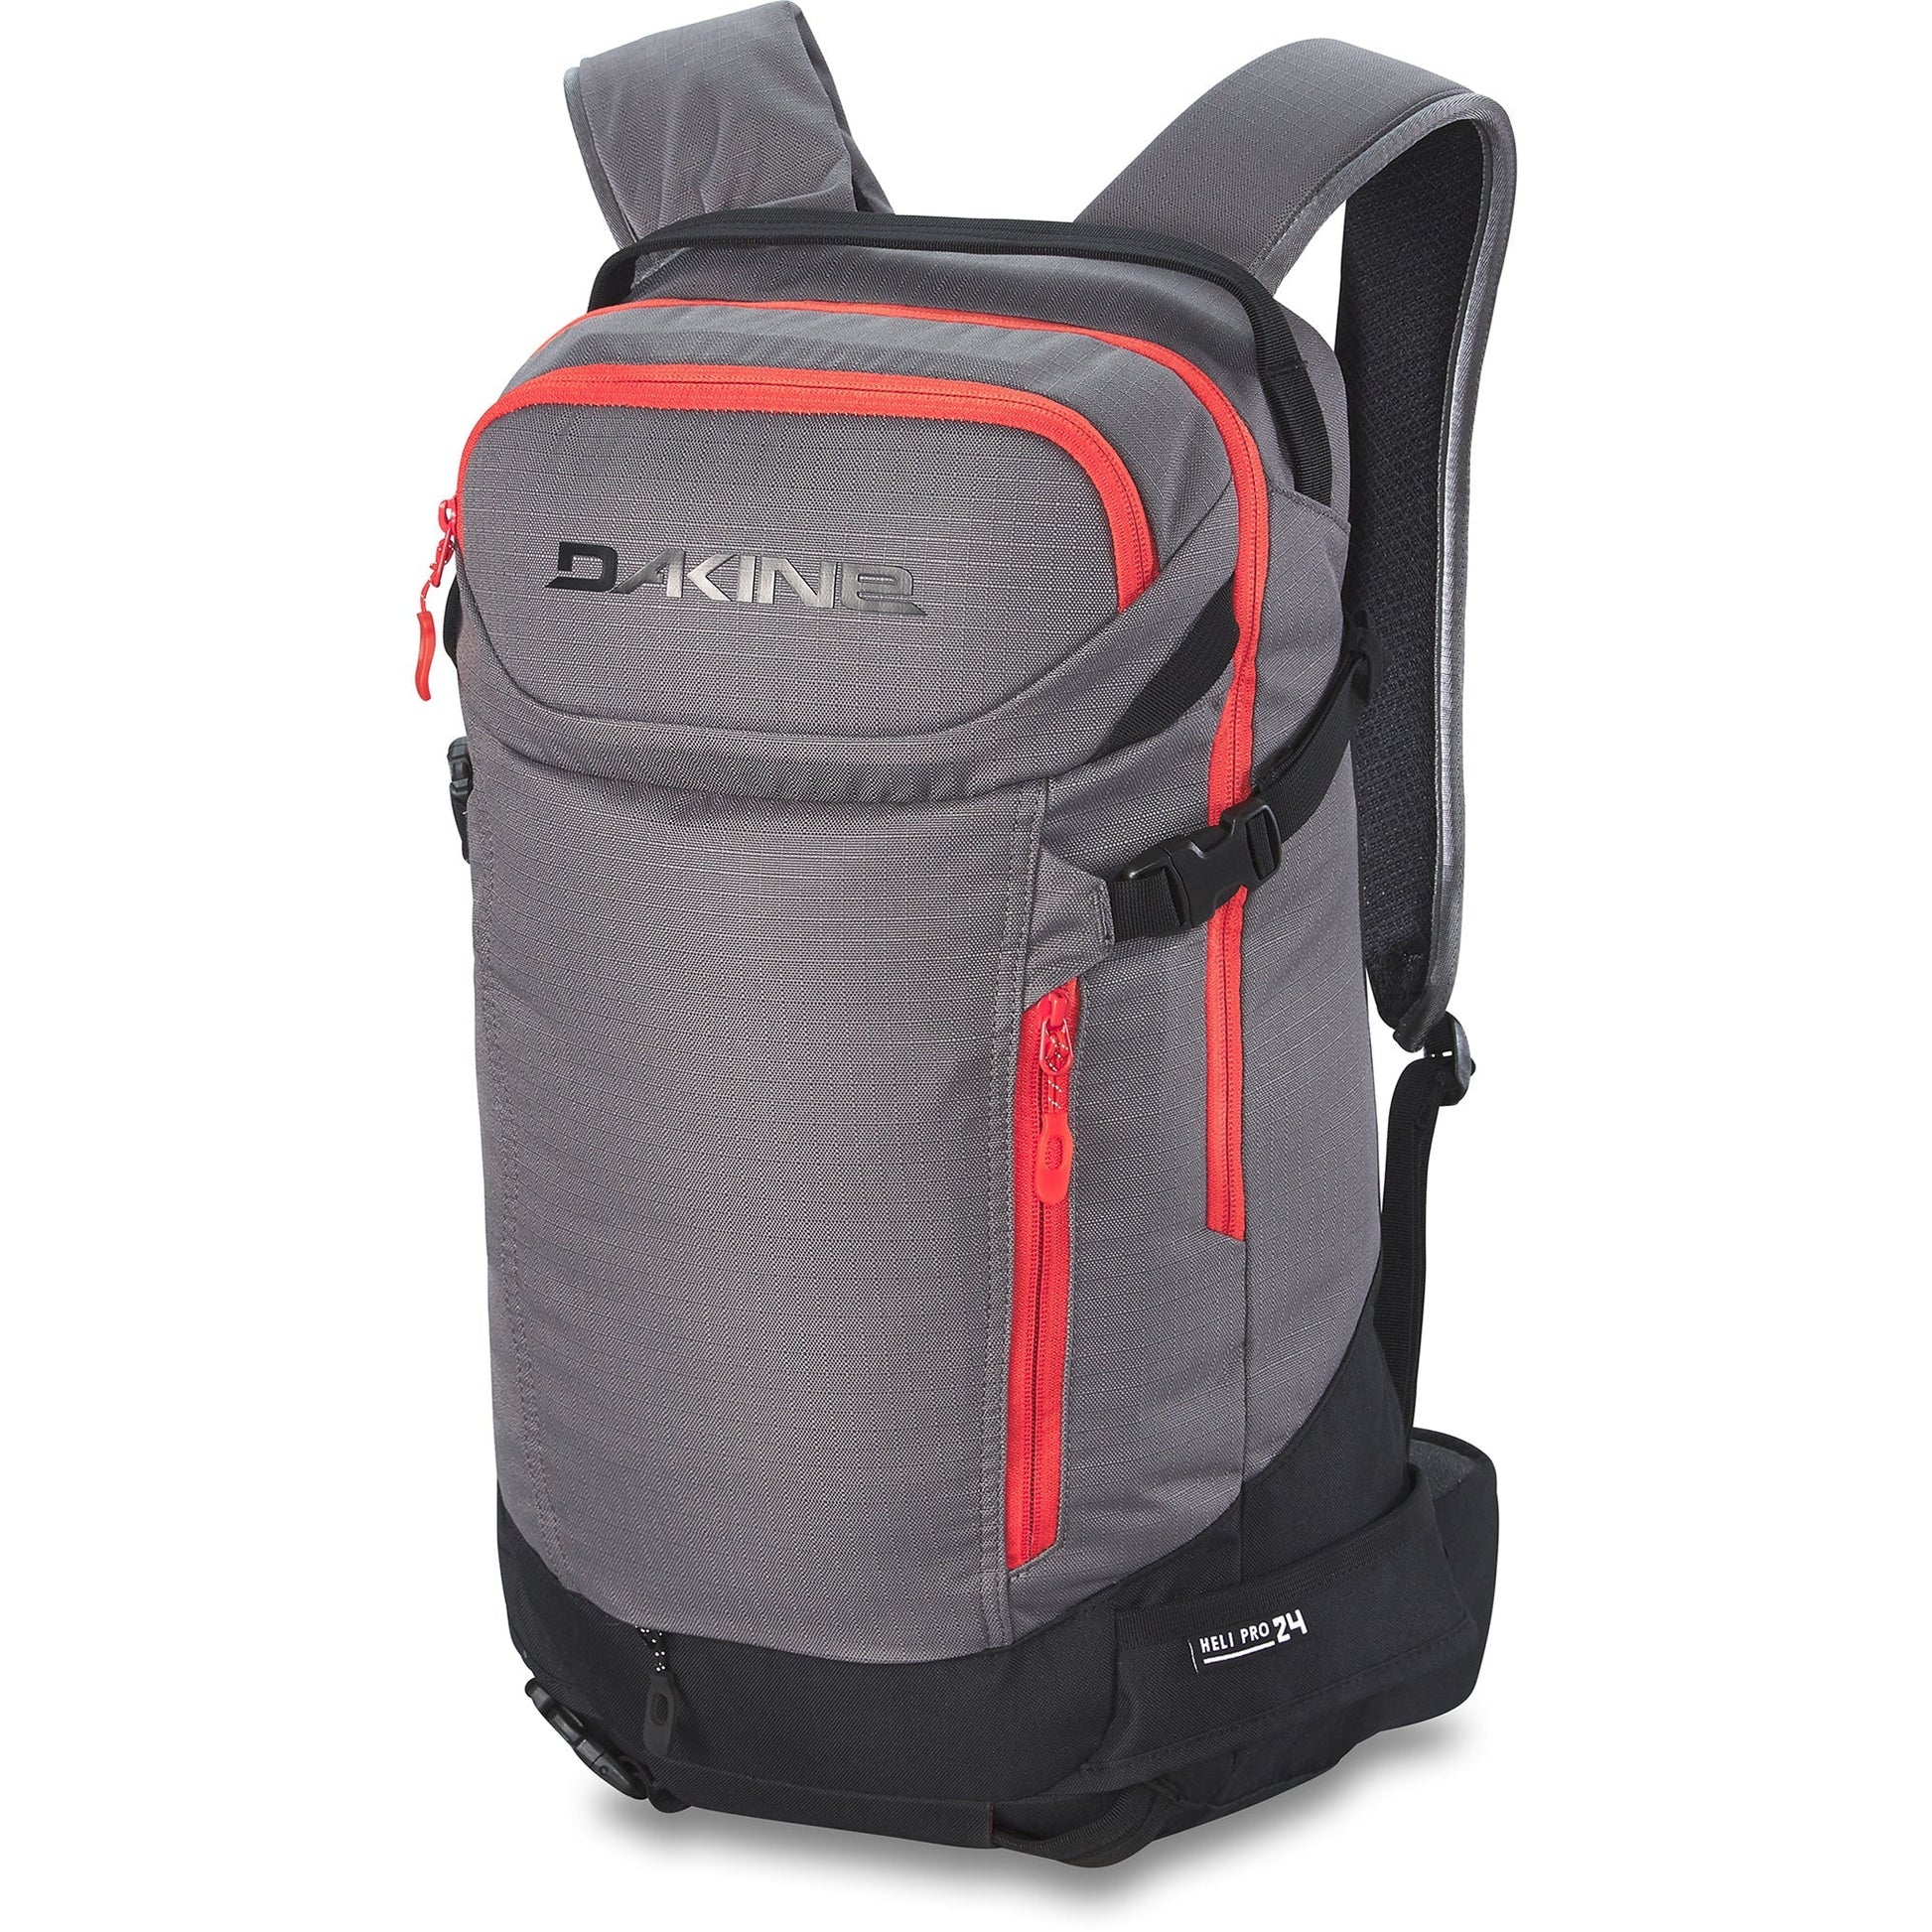 Dakine Heli Pro 24L Backpack - Steel Grey